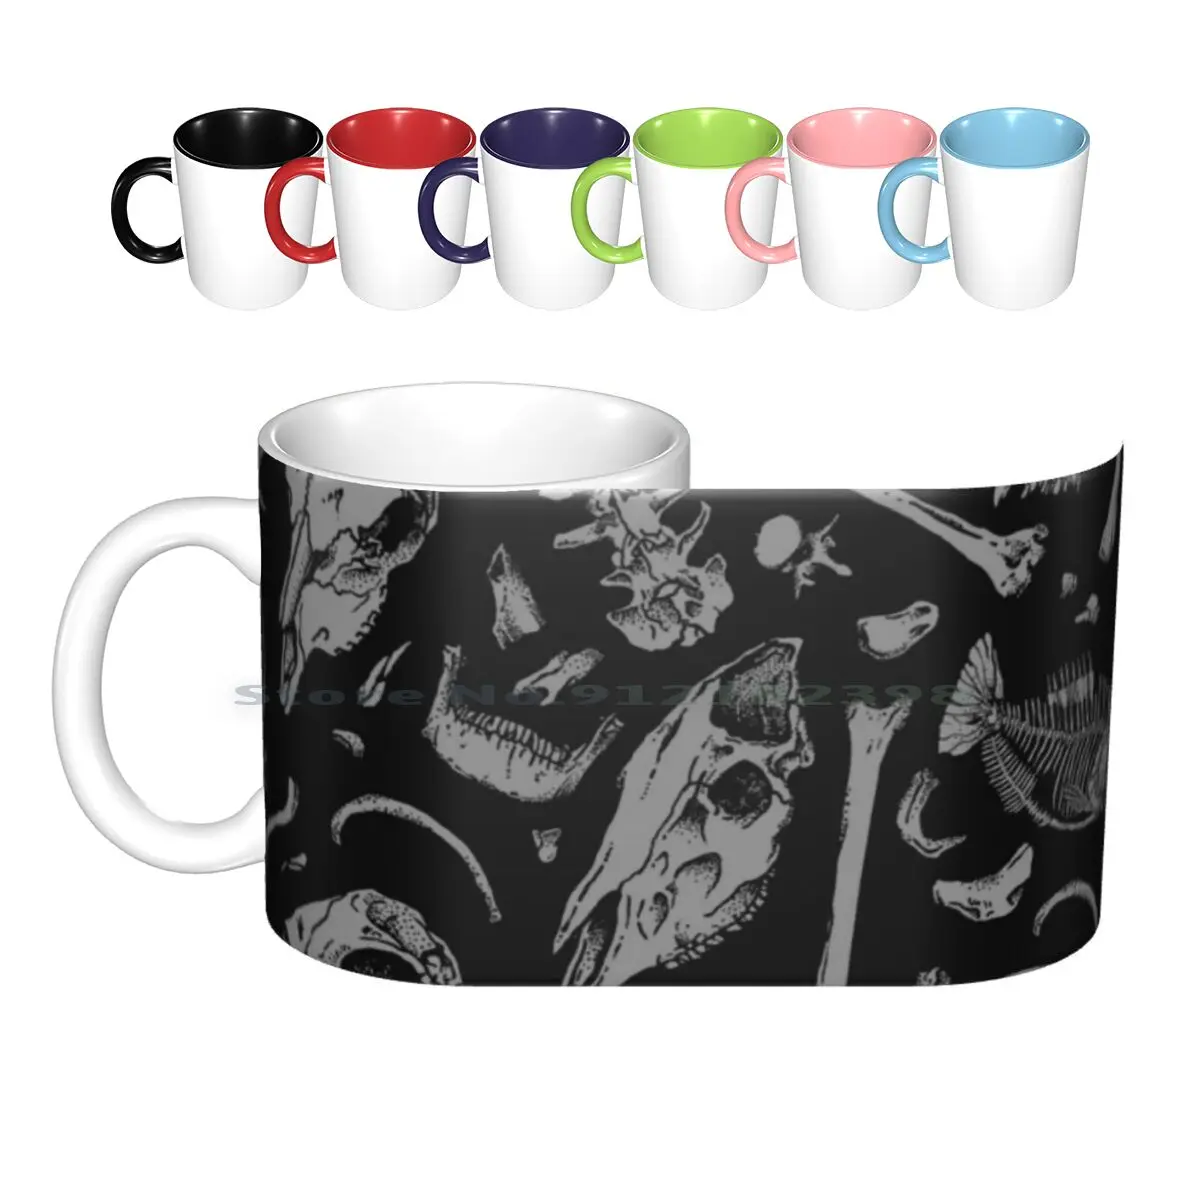 

Керамические кружки, кофейные чашки, кружка для чая с изображением костей, черепа, черепа смерти, темноты, кота, креативный тренд